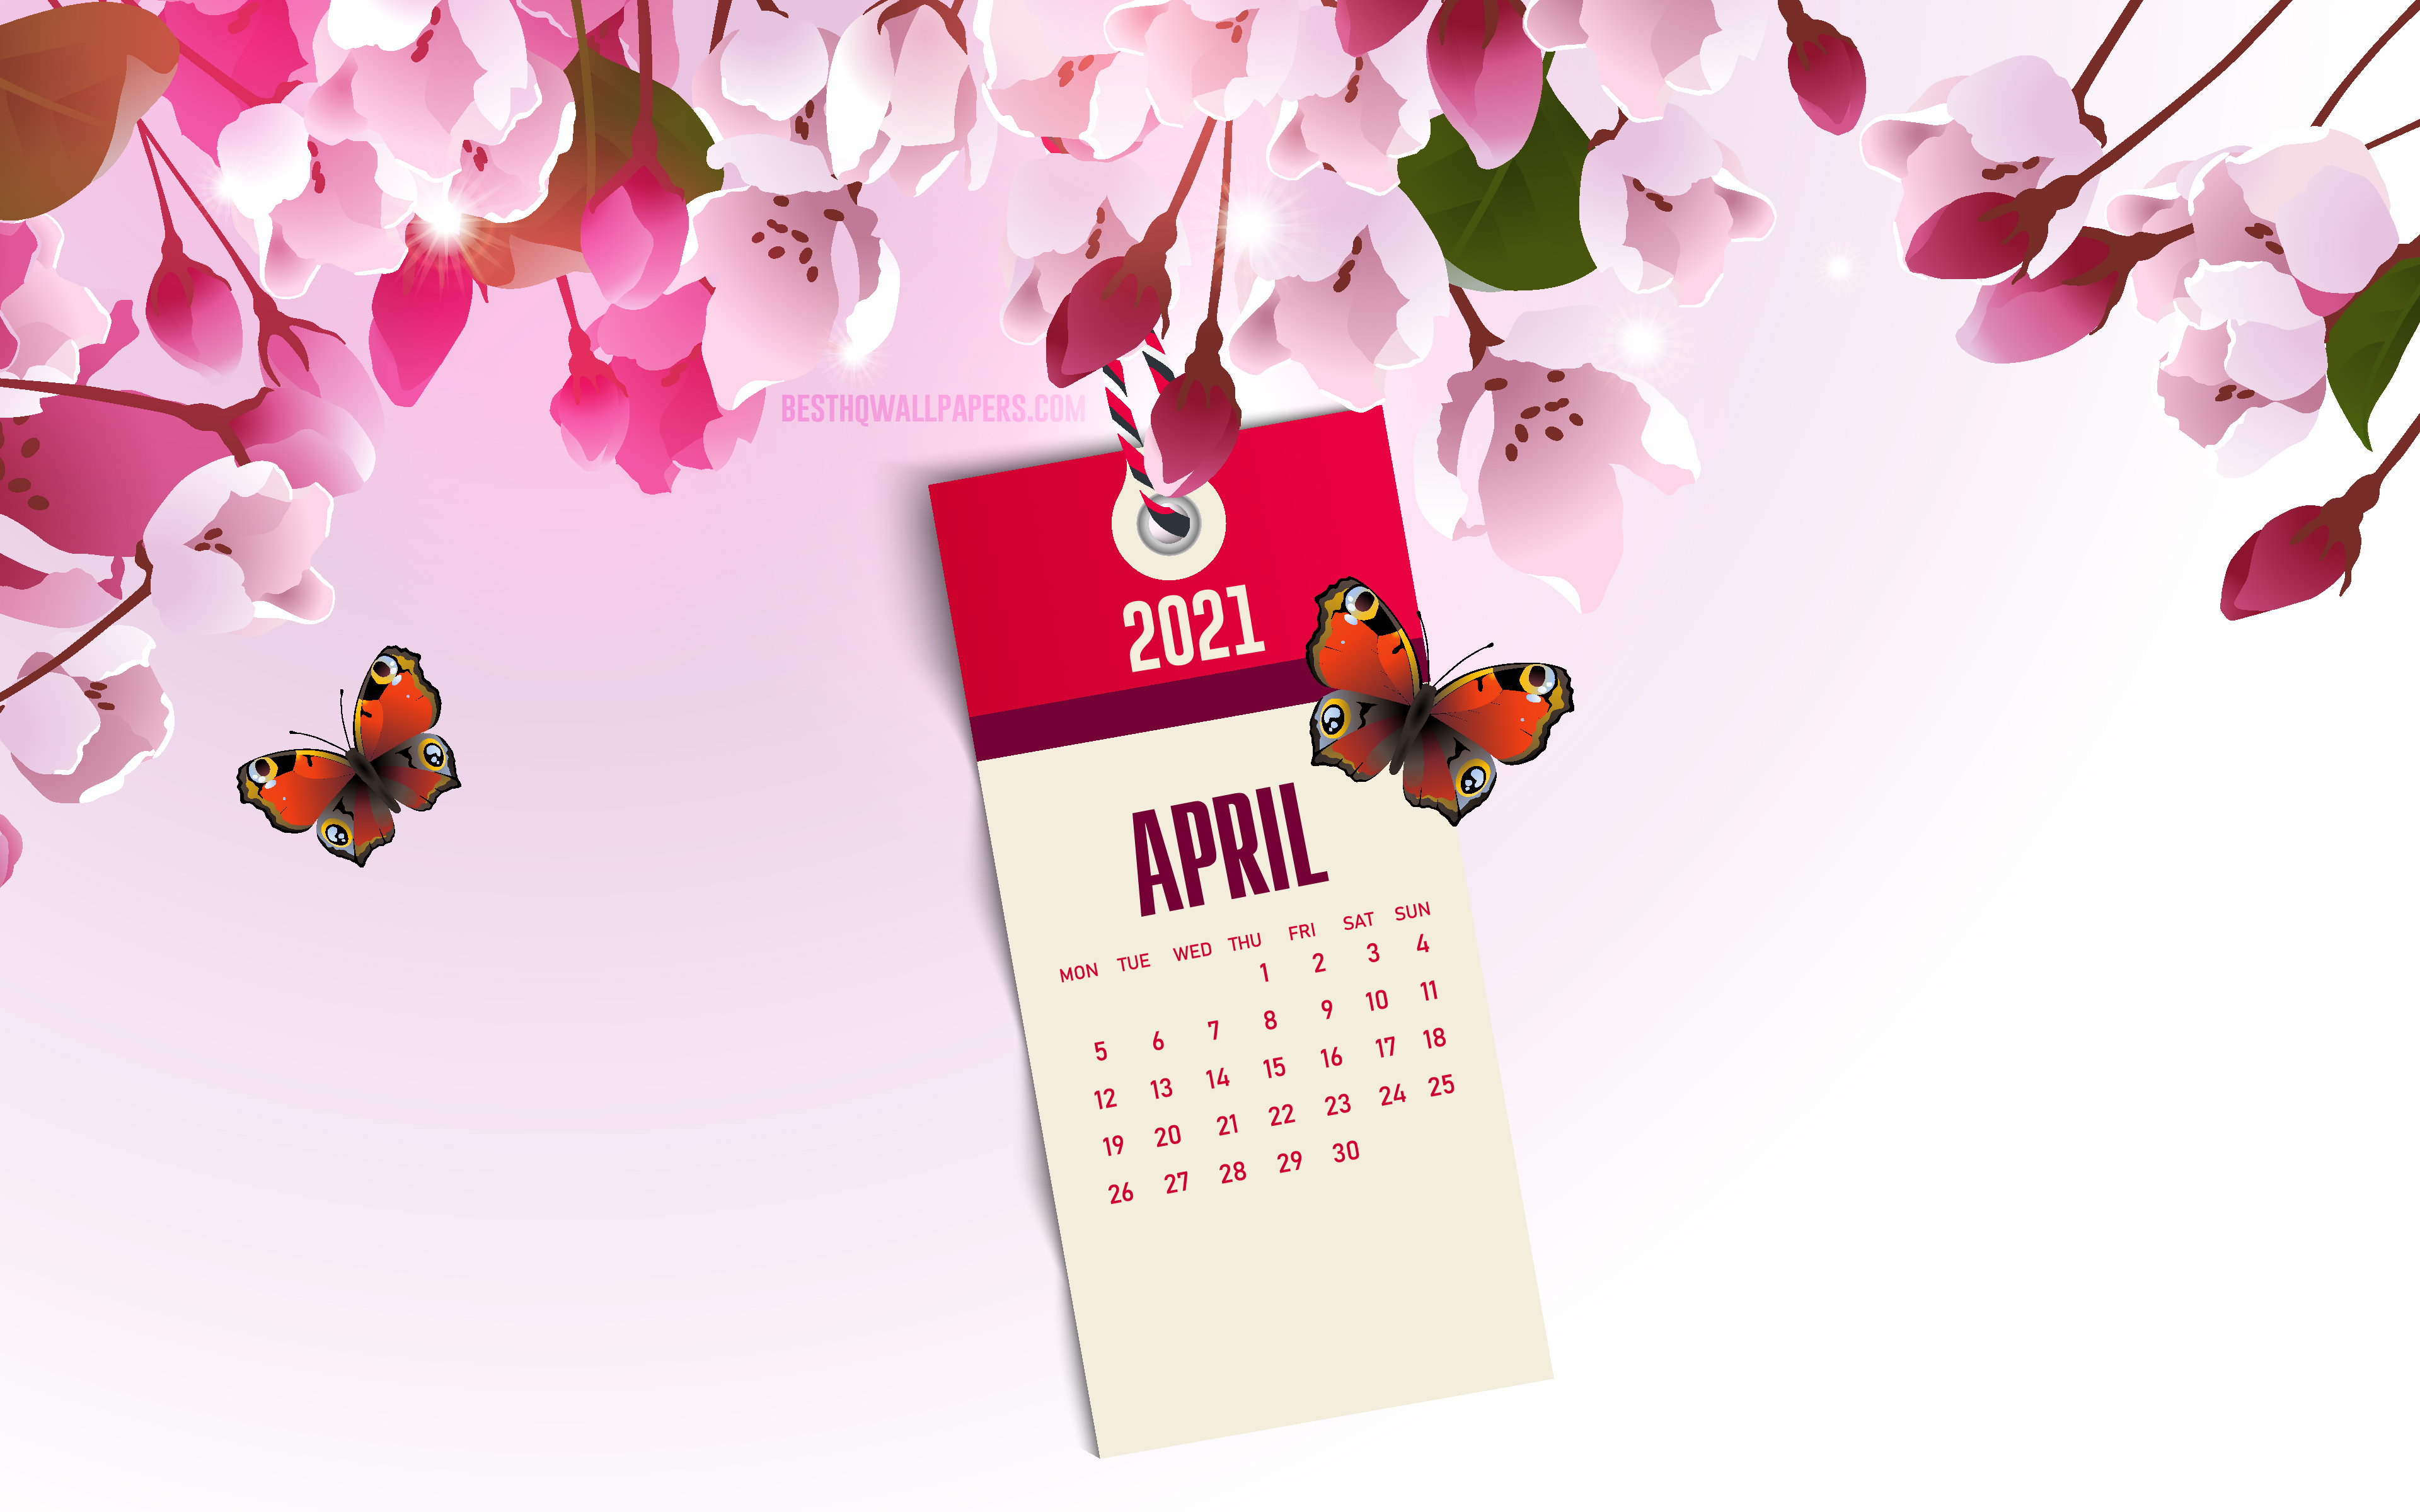 Download wallpapers 2021 April Calendar, 4k, pink spring background